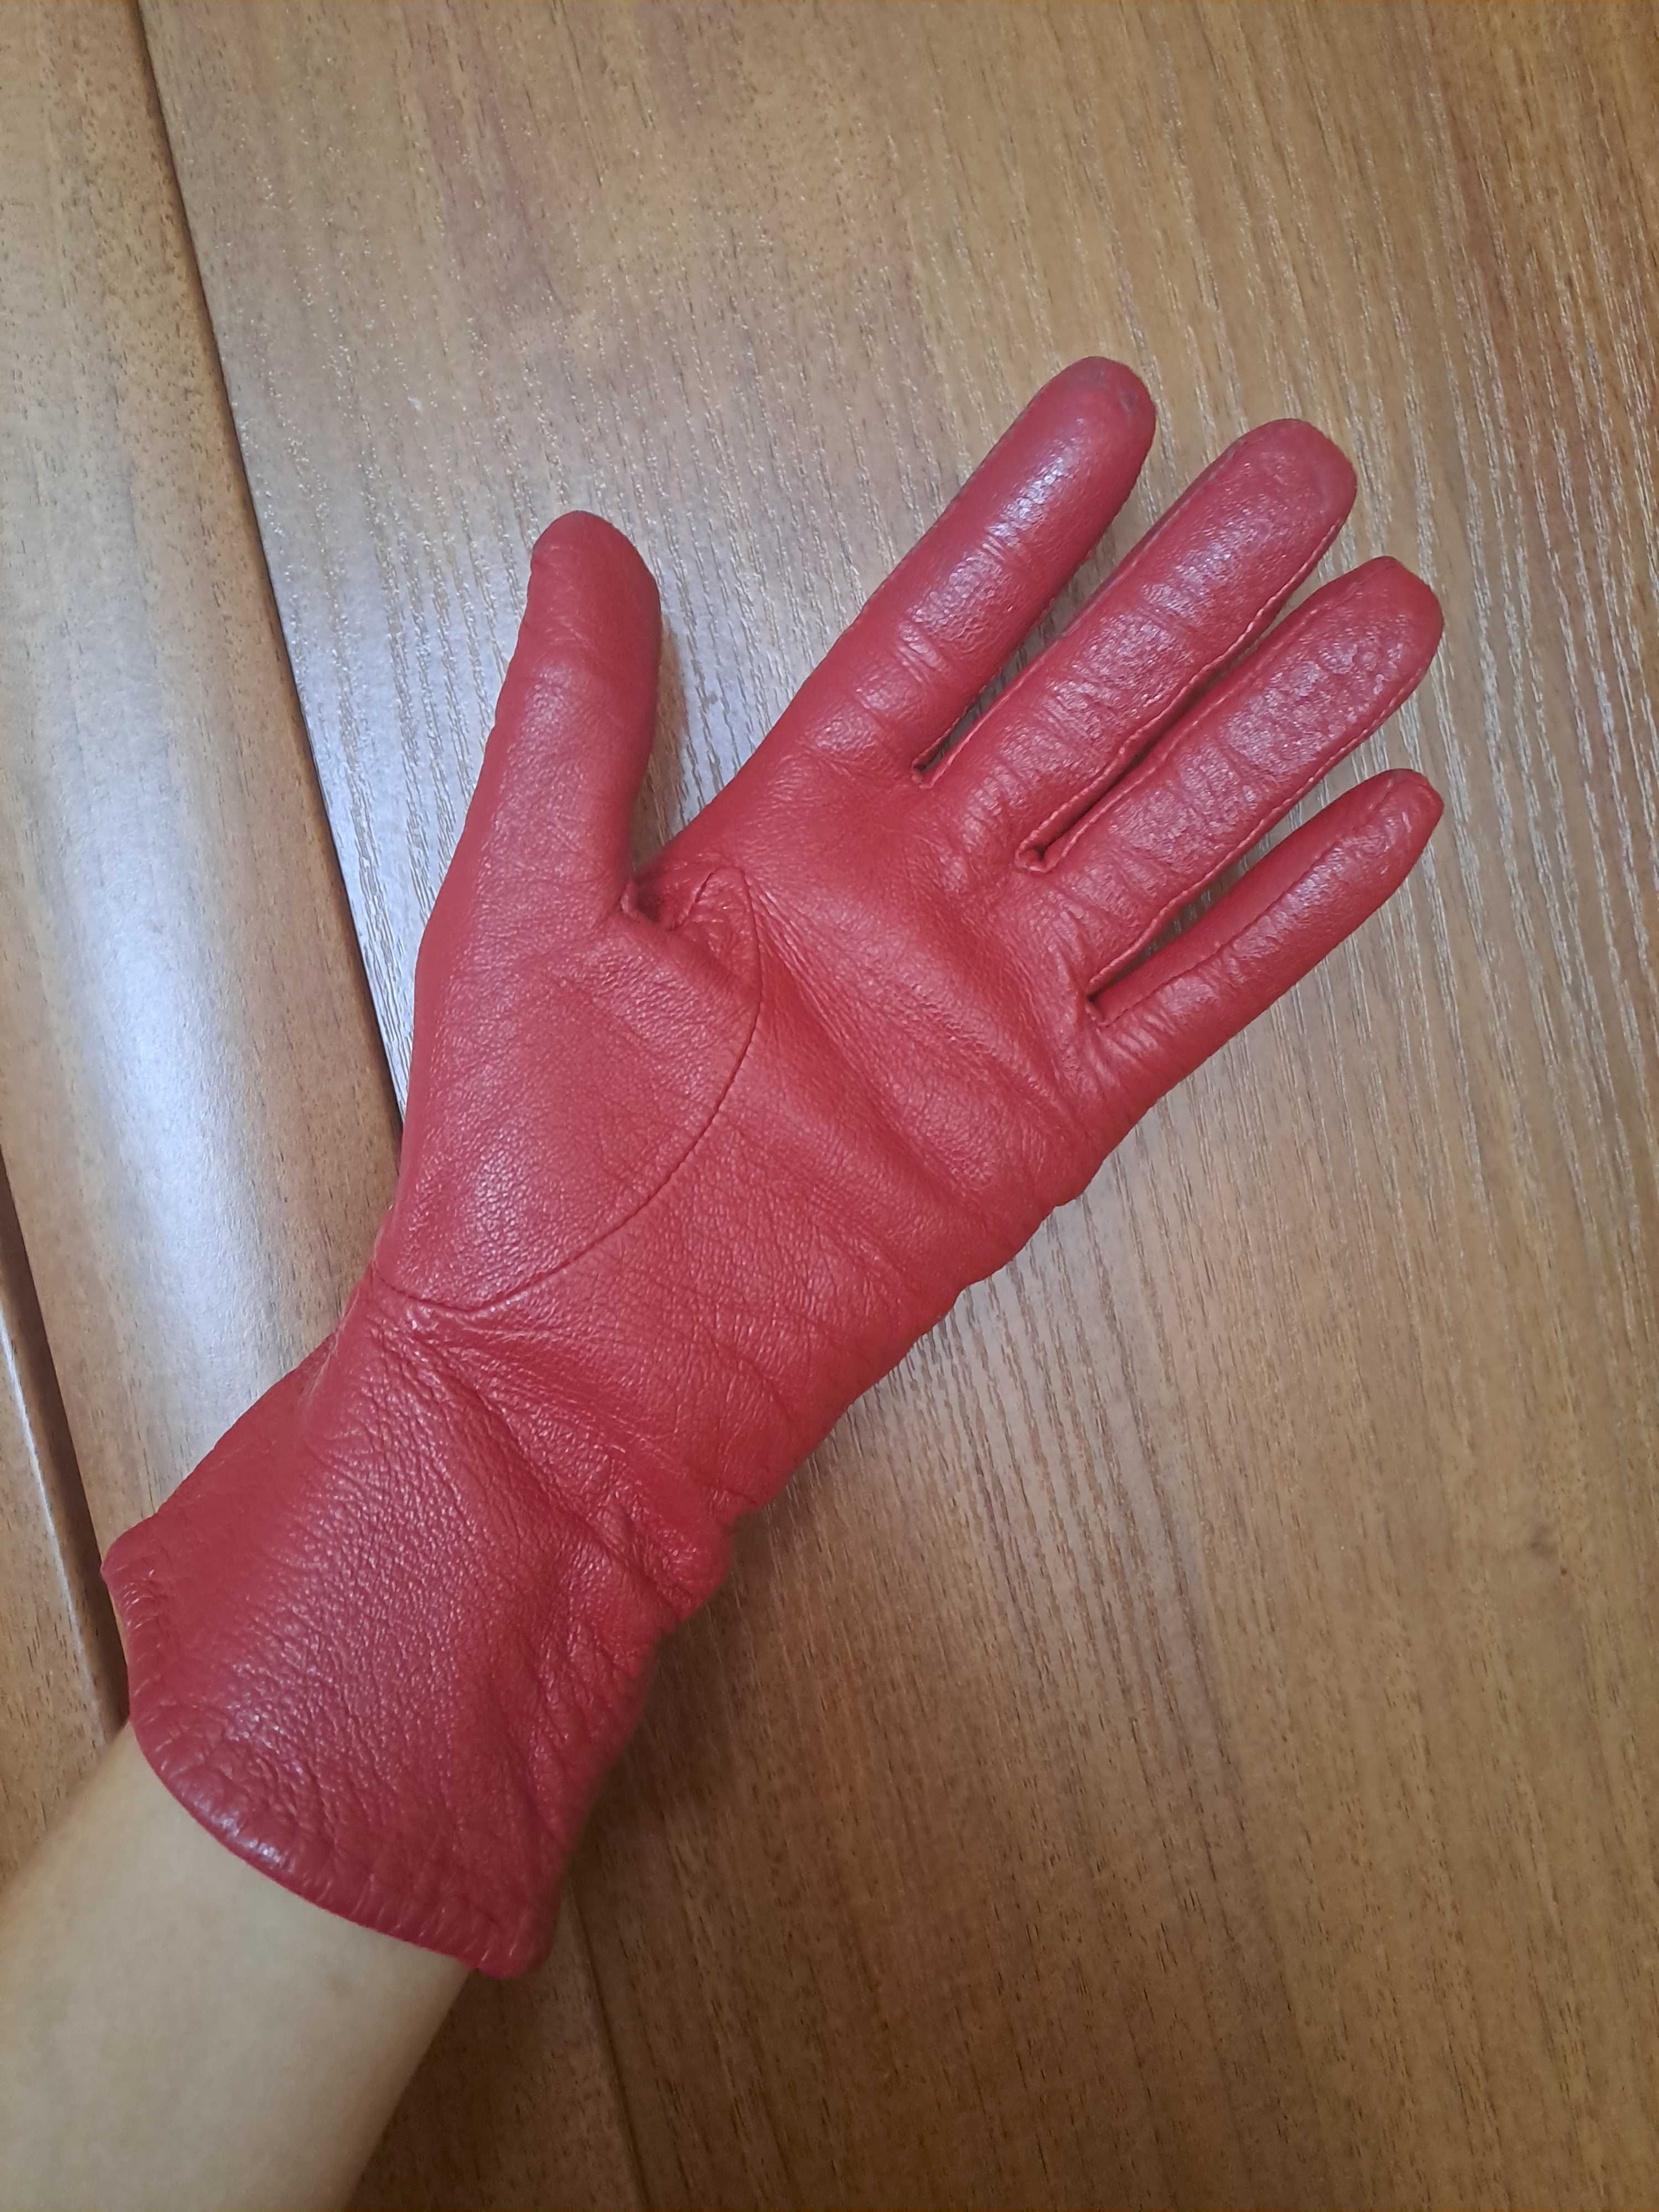 Skorzane czerwone rękawiczki